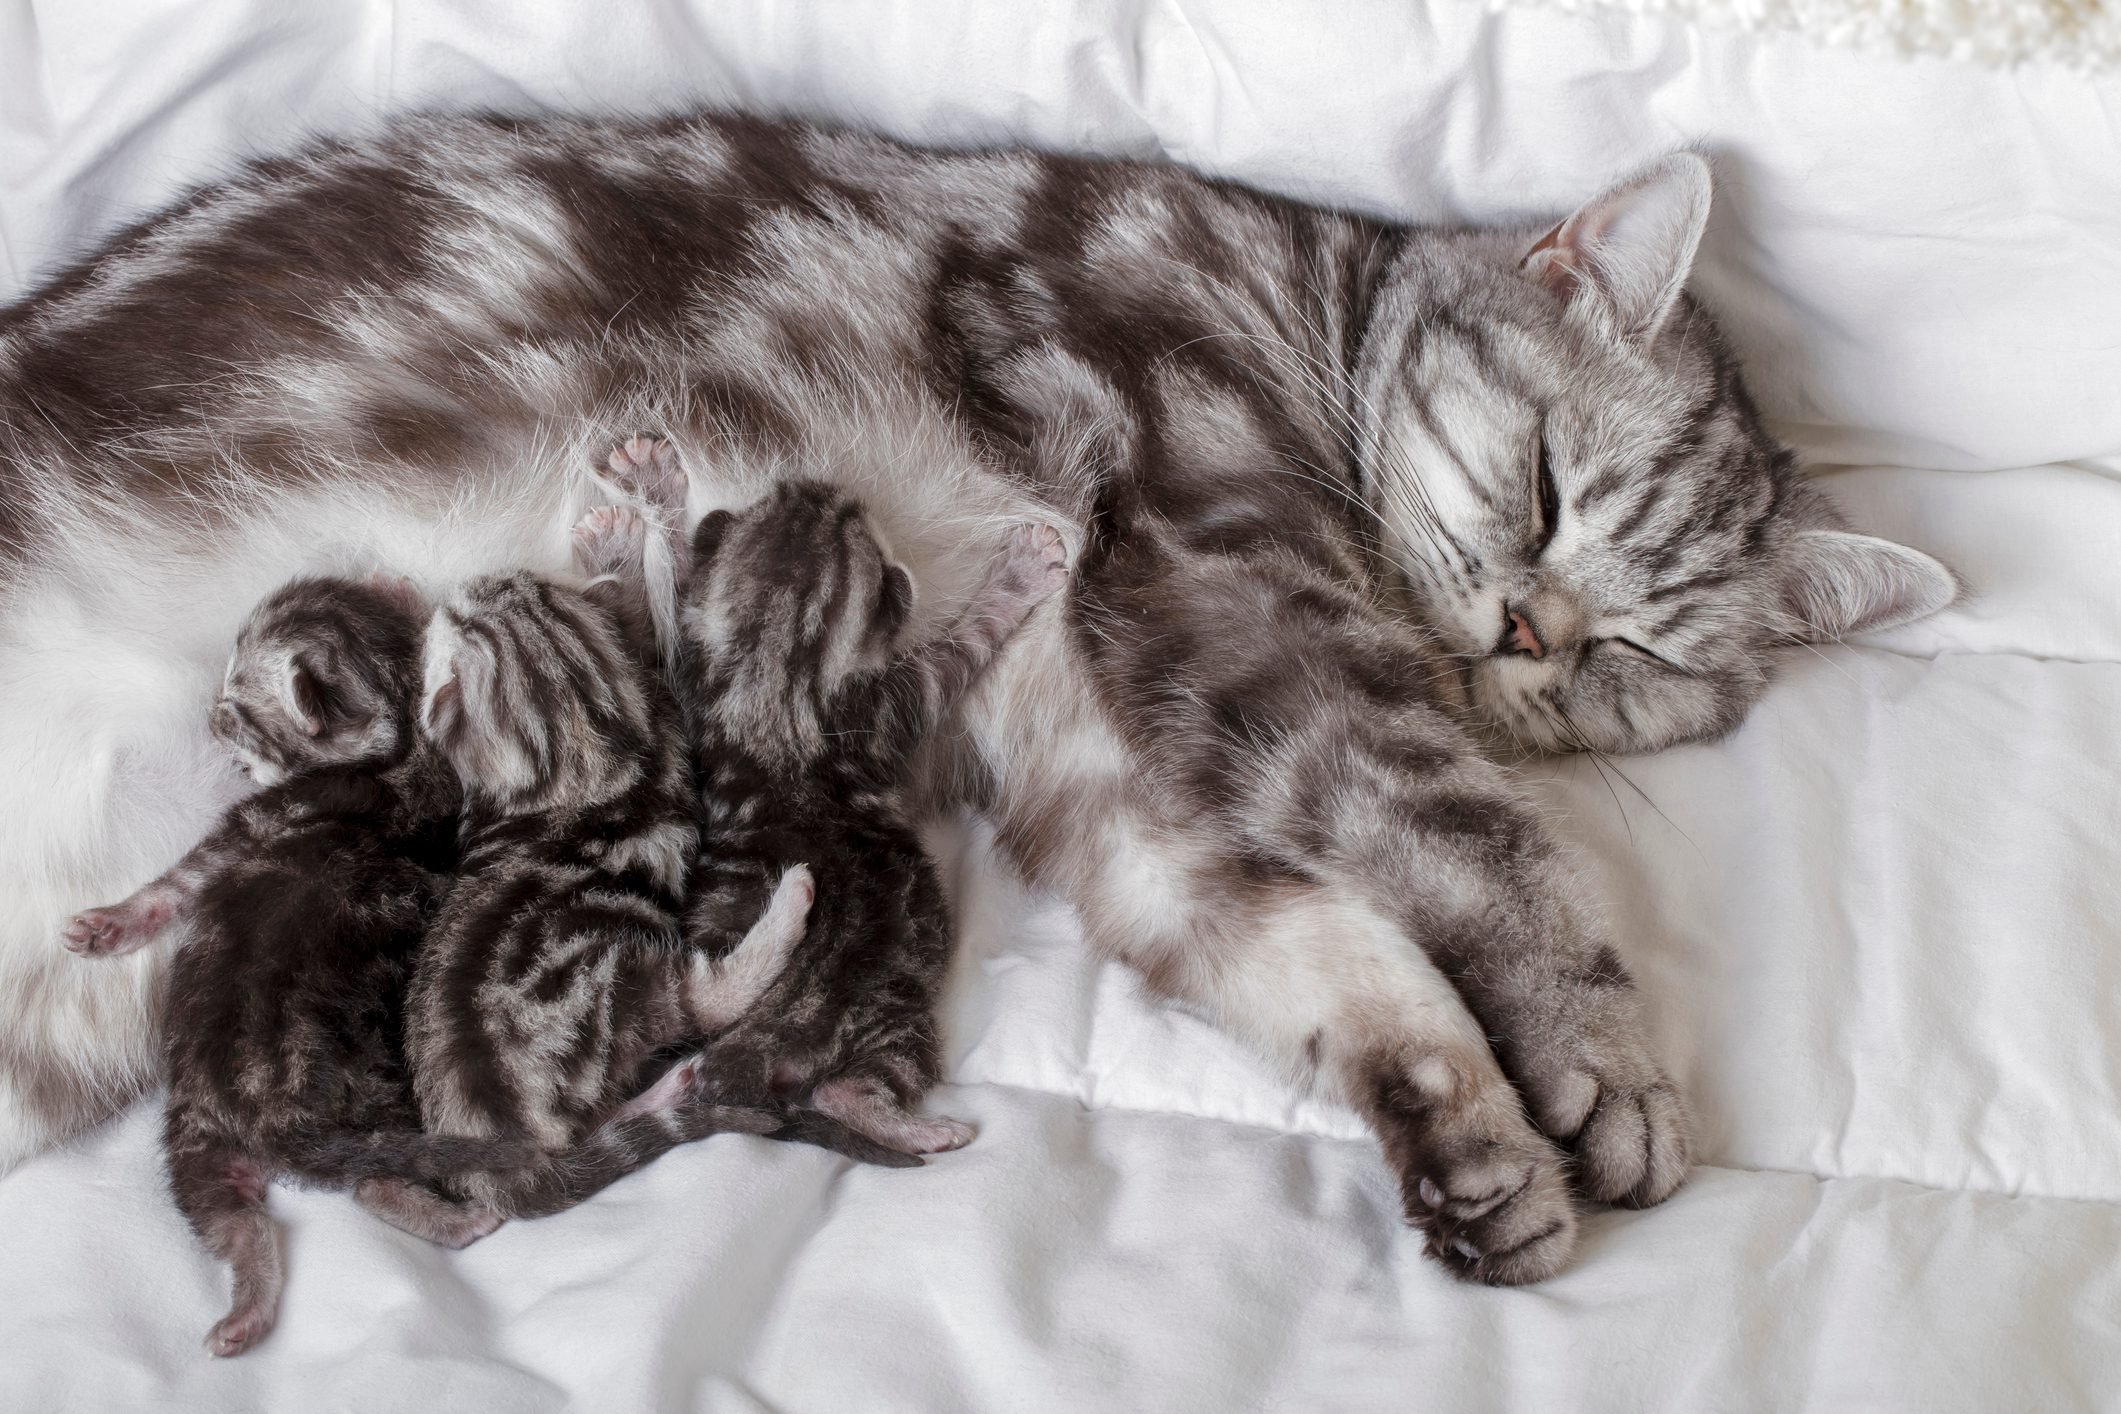 Mother cat with newborn kittens (british shorthair) suckling milk